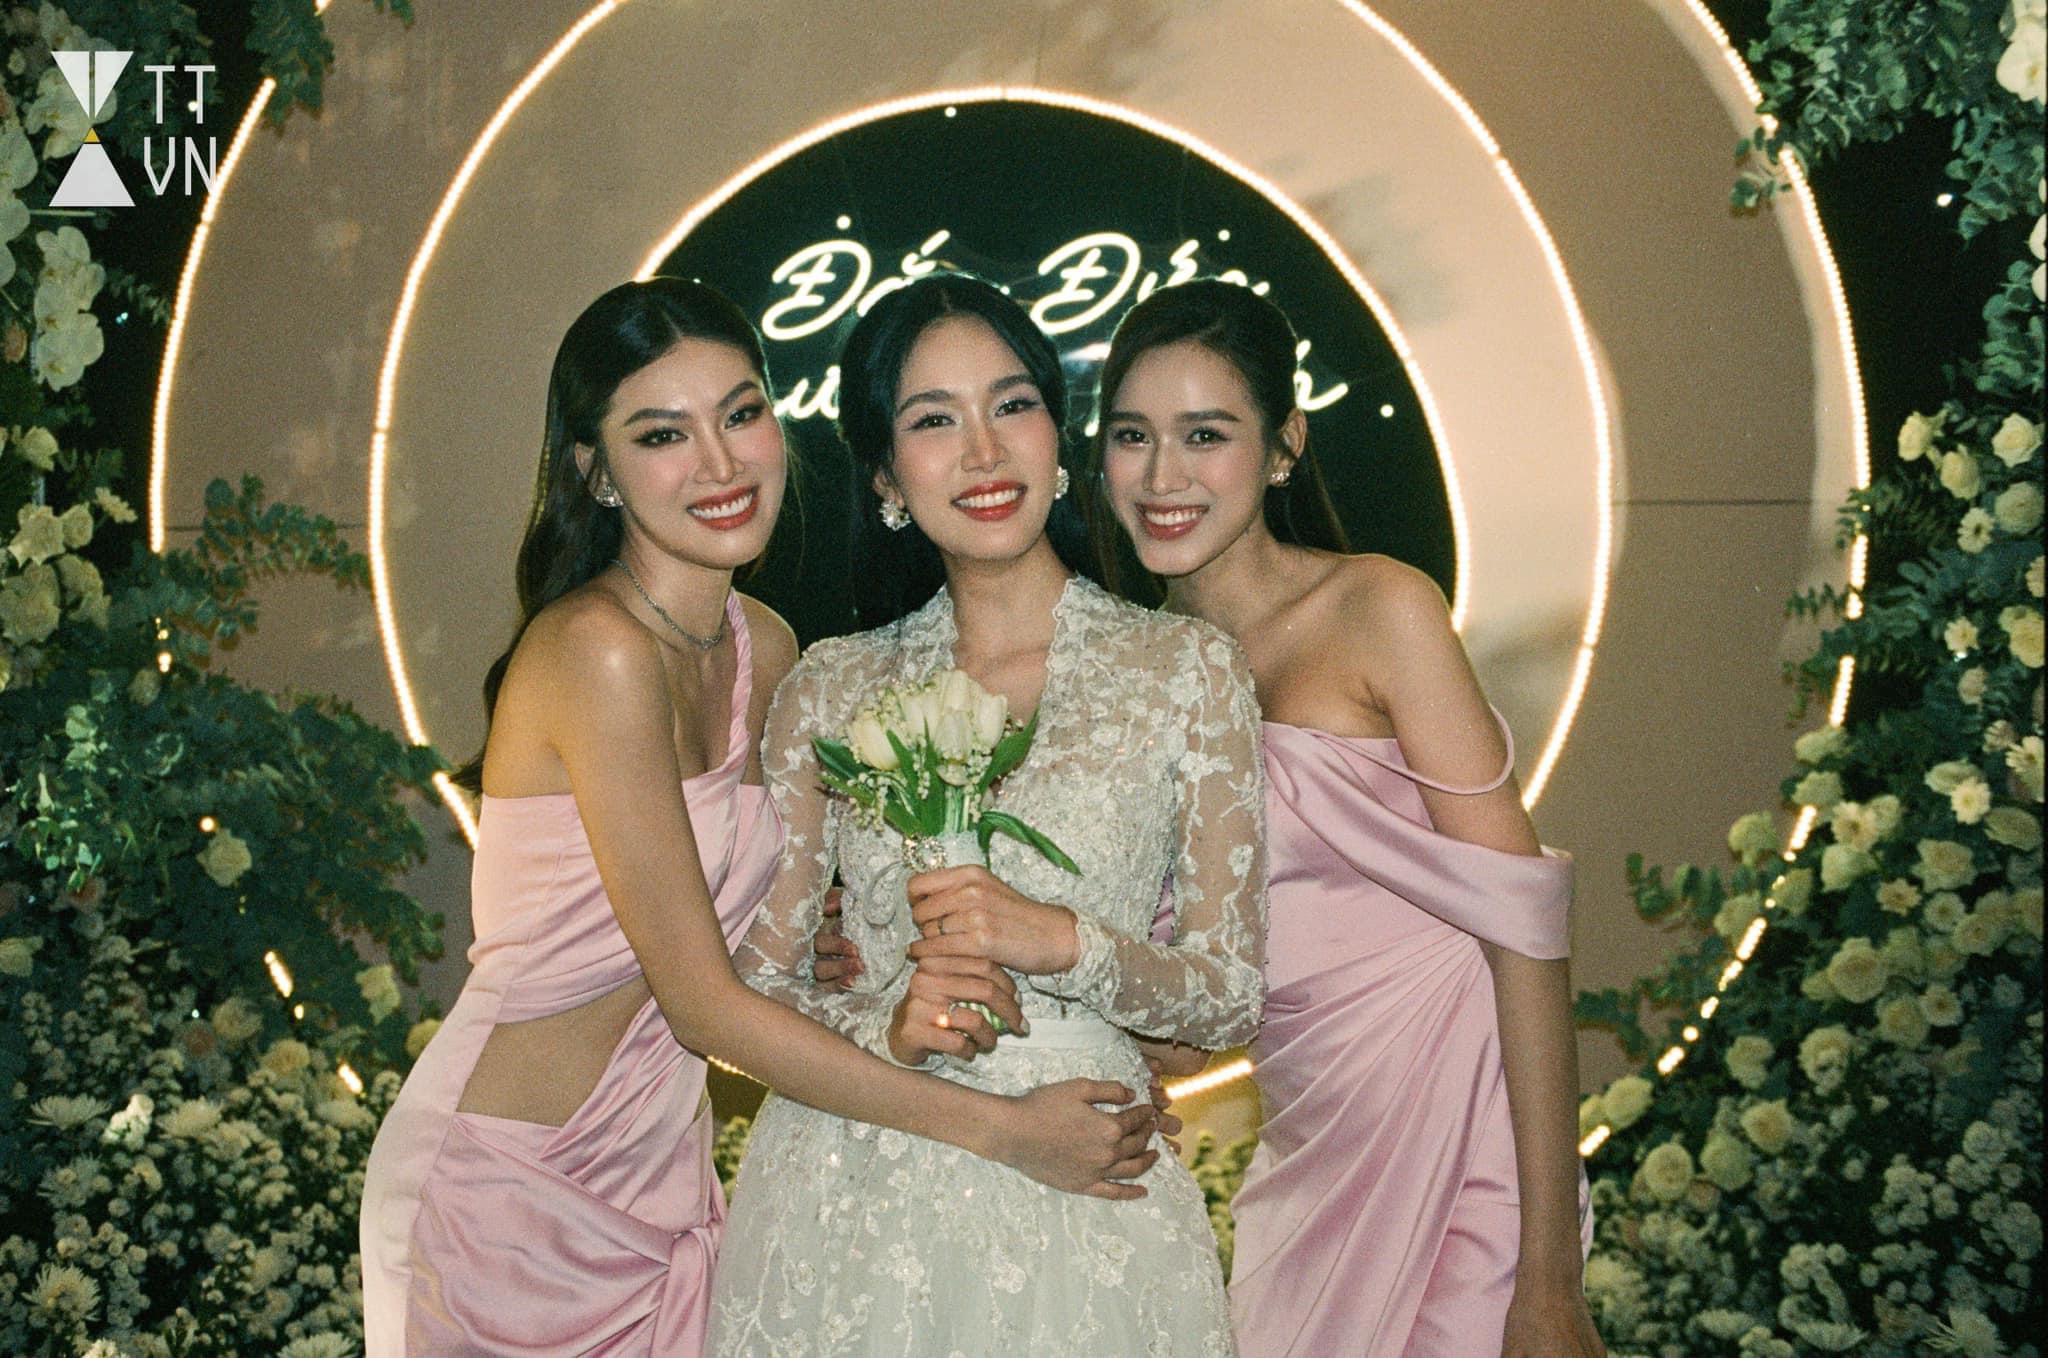 Đỗ Hà và Ngọc Thảo khoe trọn đôi chân 111cm khi diện váy lụa xẻ cao, làm phù dâu trong đám cưới Á hậu Phương Anh.